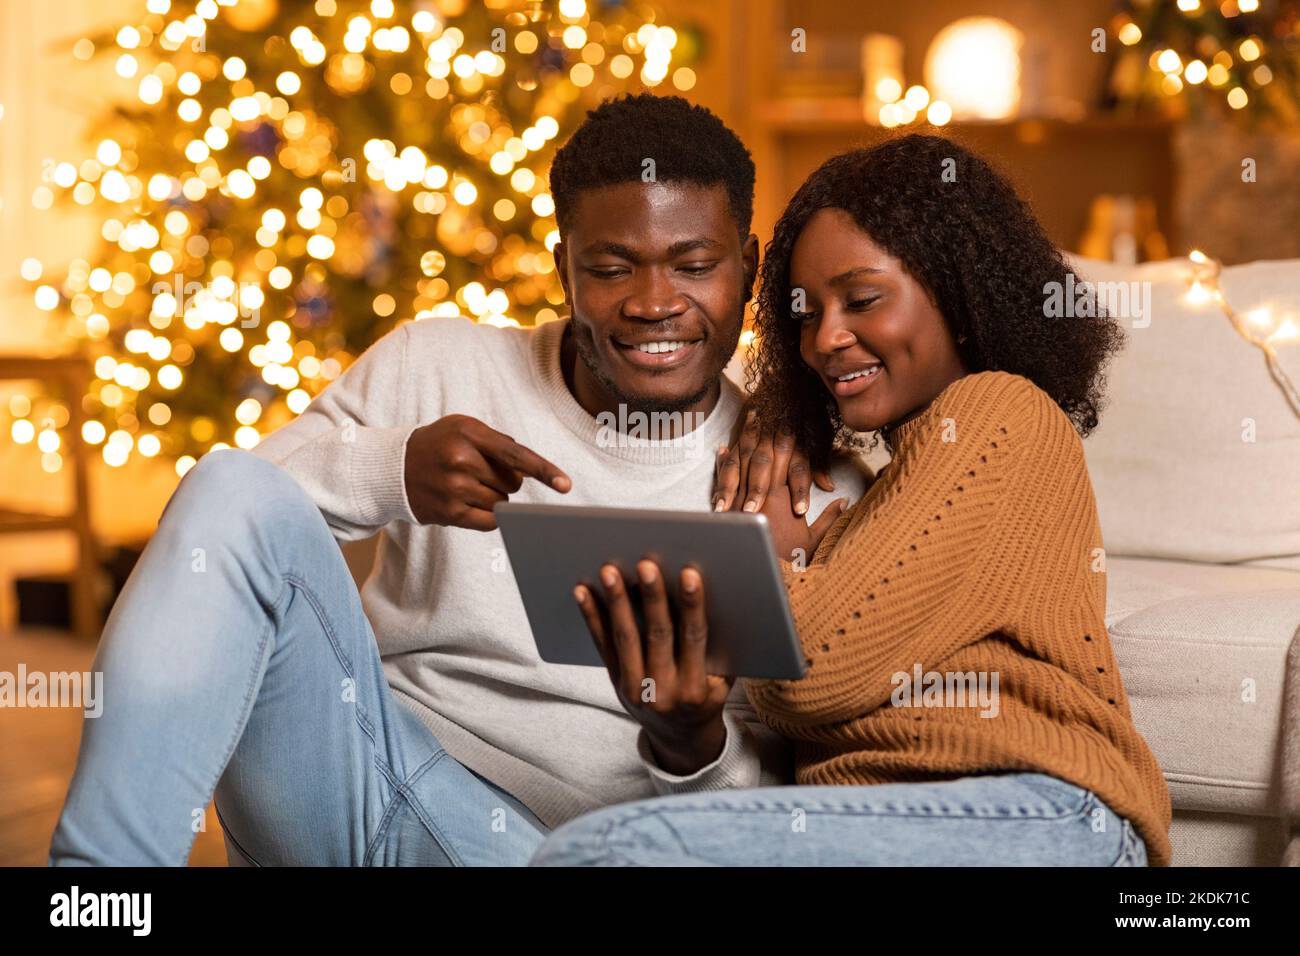 Lächelnder junger afroamerikanischer Mann zeigt der Dame ein Tablet, führt einen Videoanruf durch, genießt den Urlaub im Wohnzimmer Stockfoto